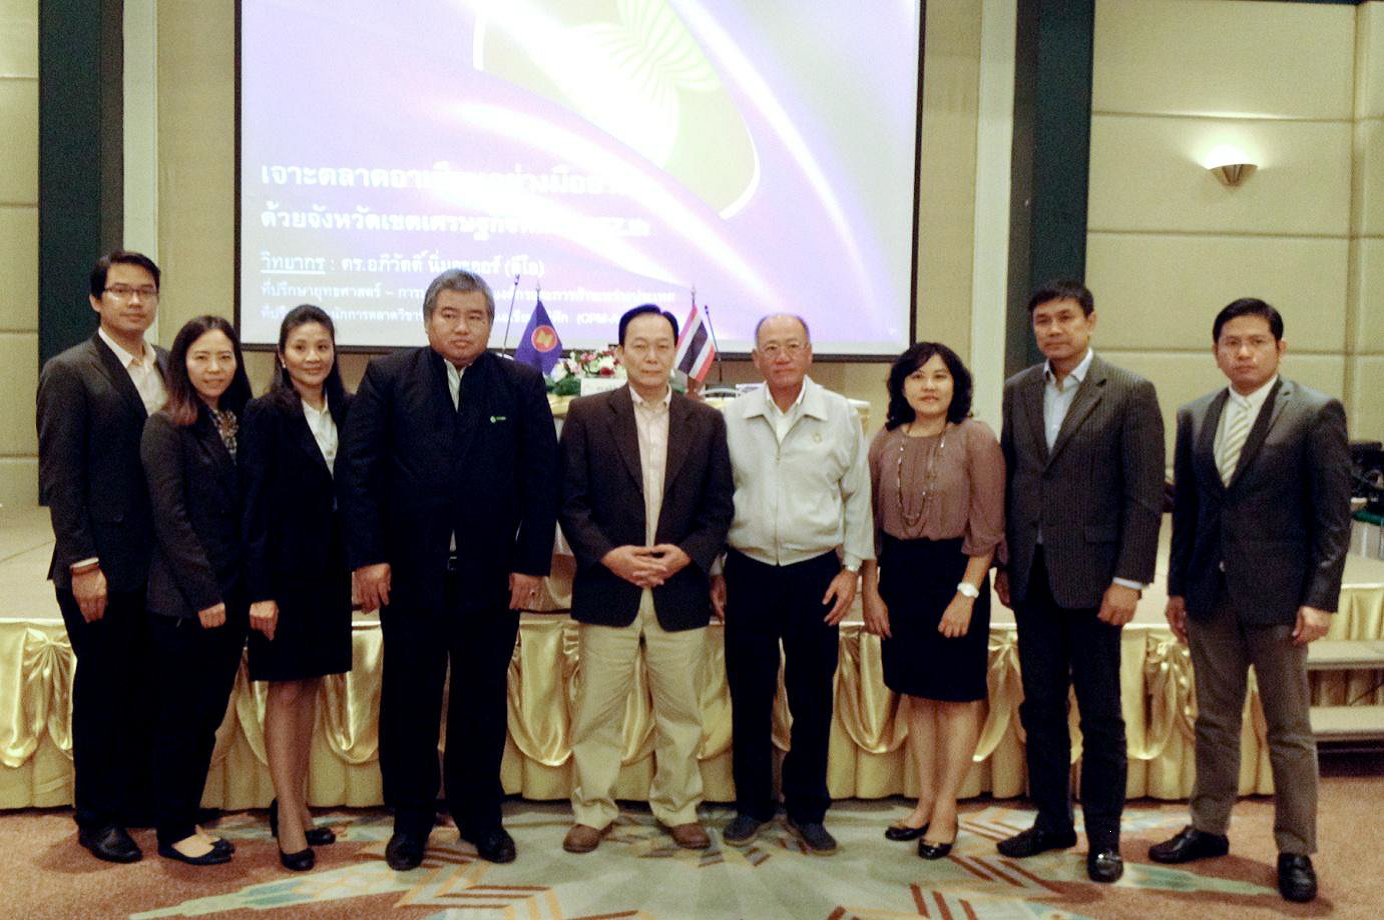 EXIM BANK ร่วมกับ TNSC จัดอบรมสนับสนุนผู้ประกอบการไทยค้าขายและลงทุนในจังหวัดชายแดนและเขตเศรษฐกิจพิเศษ